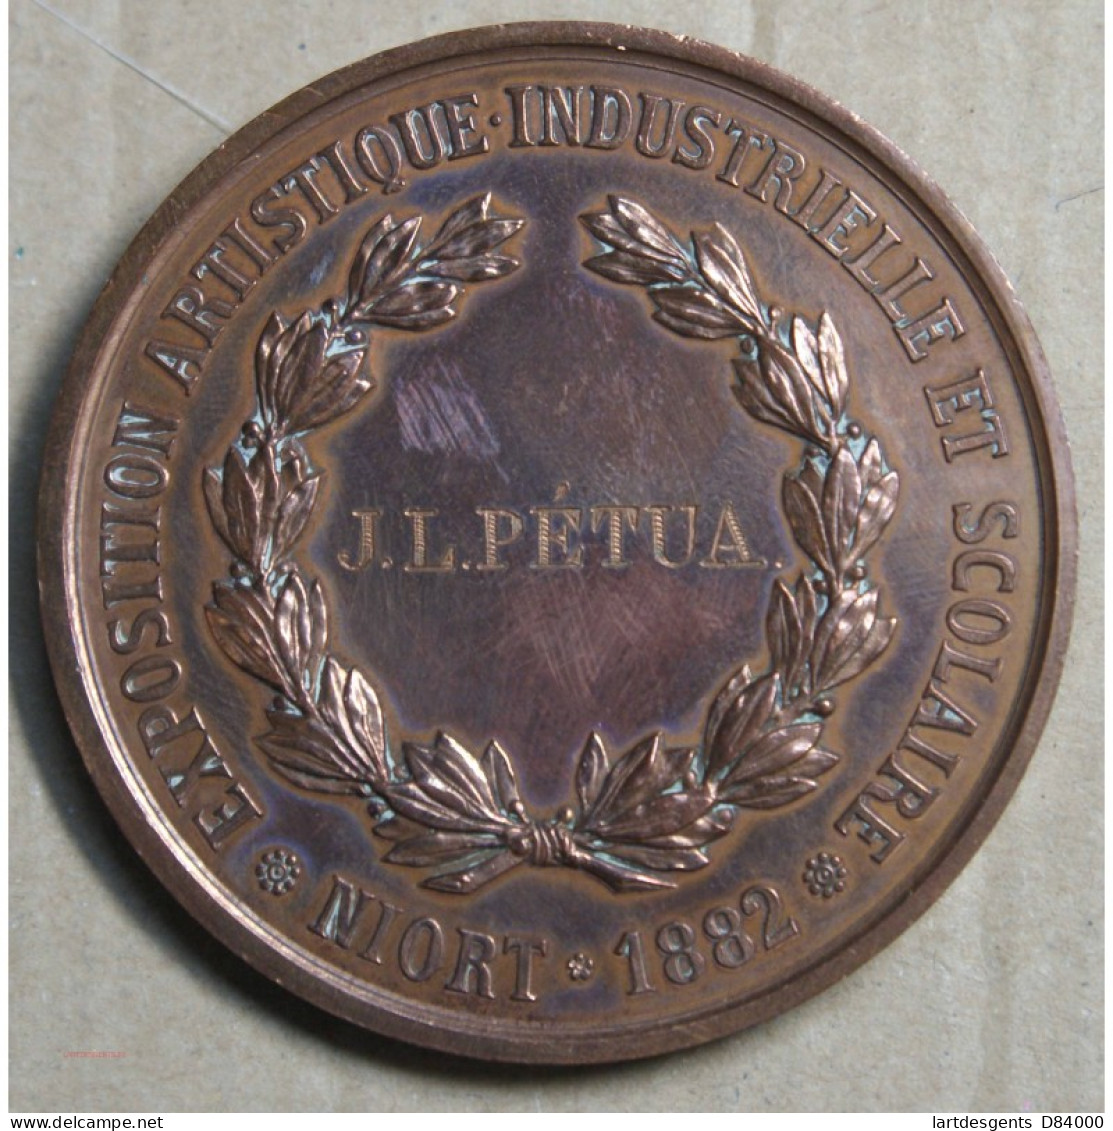 Médaille Exposition Industrielle Et Scolaire, Niort 1882 J.L. Pétua(8), Lartdesgents.fr - Royaux / De Noblesse